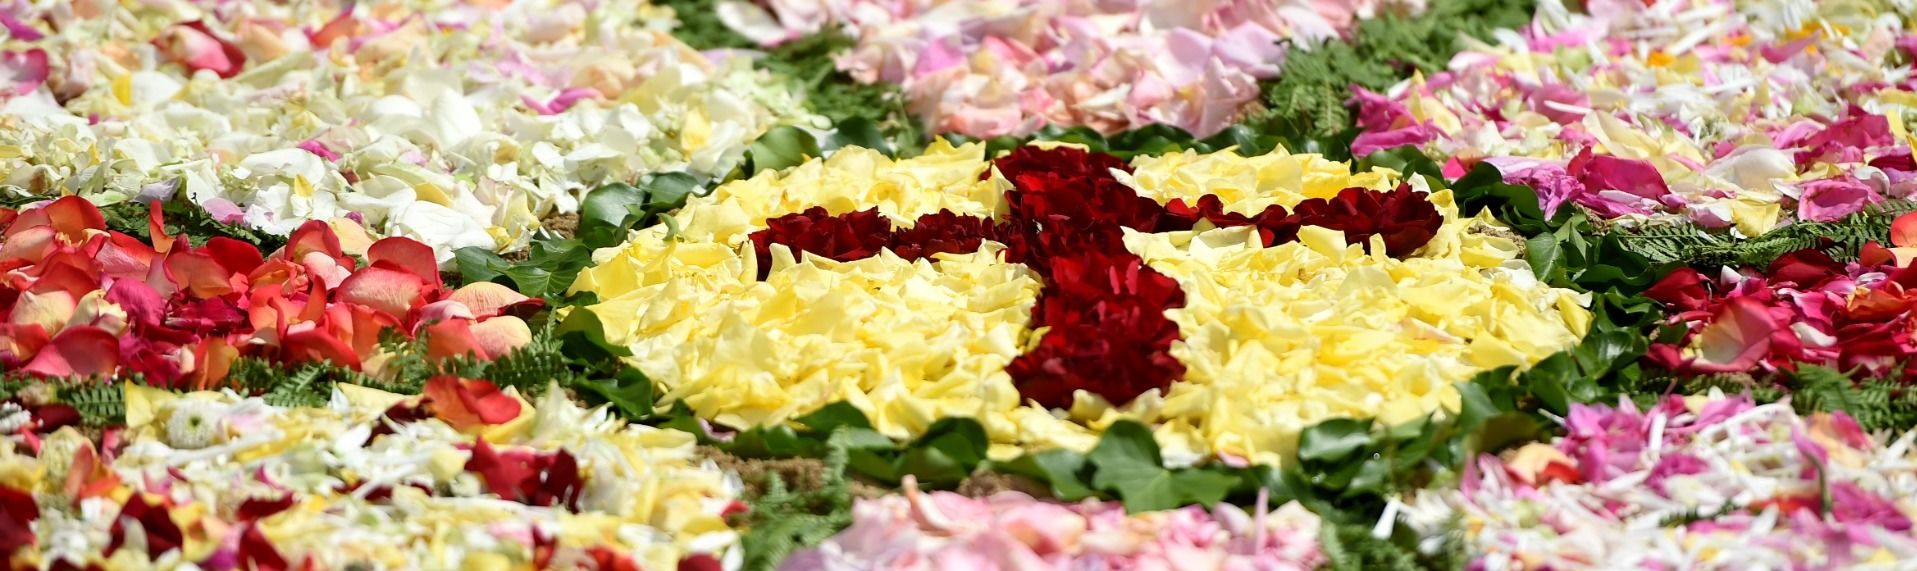 Ein traditioneller Brauch zu Fronleichnam: Blütenteppiche. - Foto: Bistum Fulda / M. Seidel